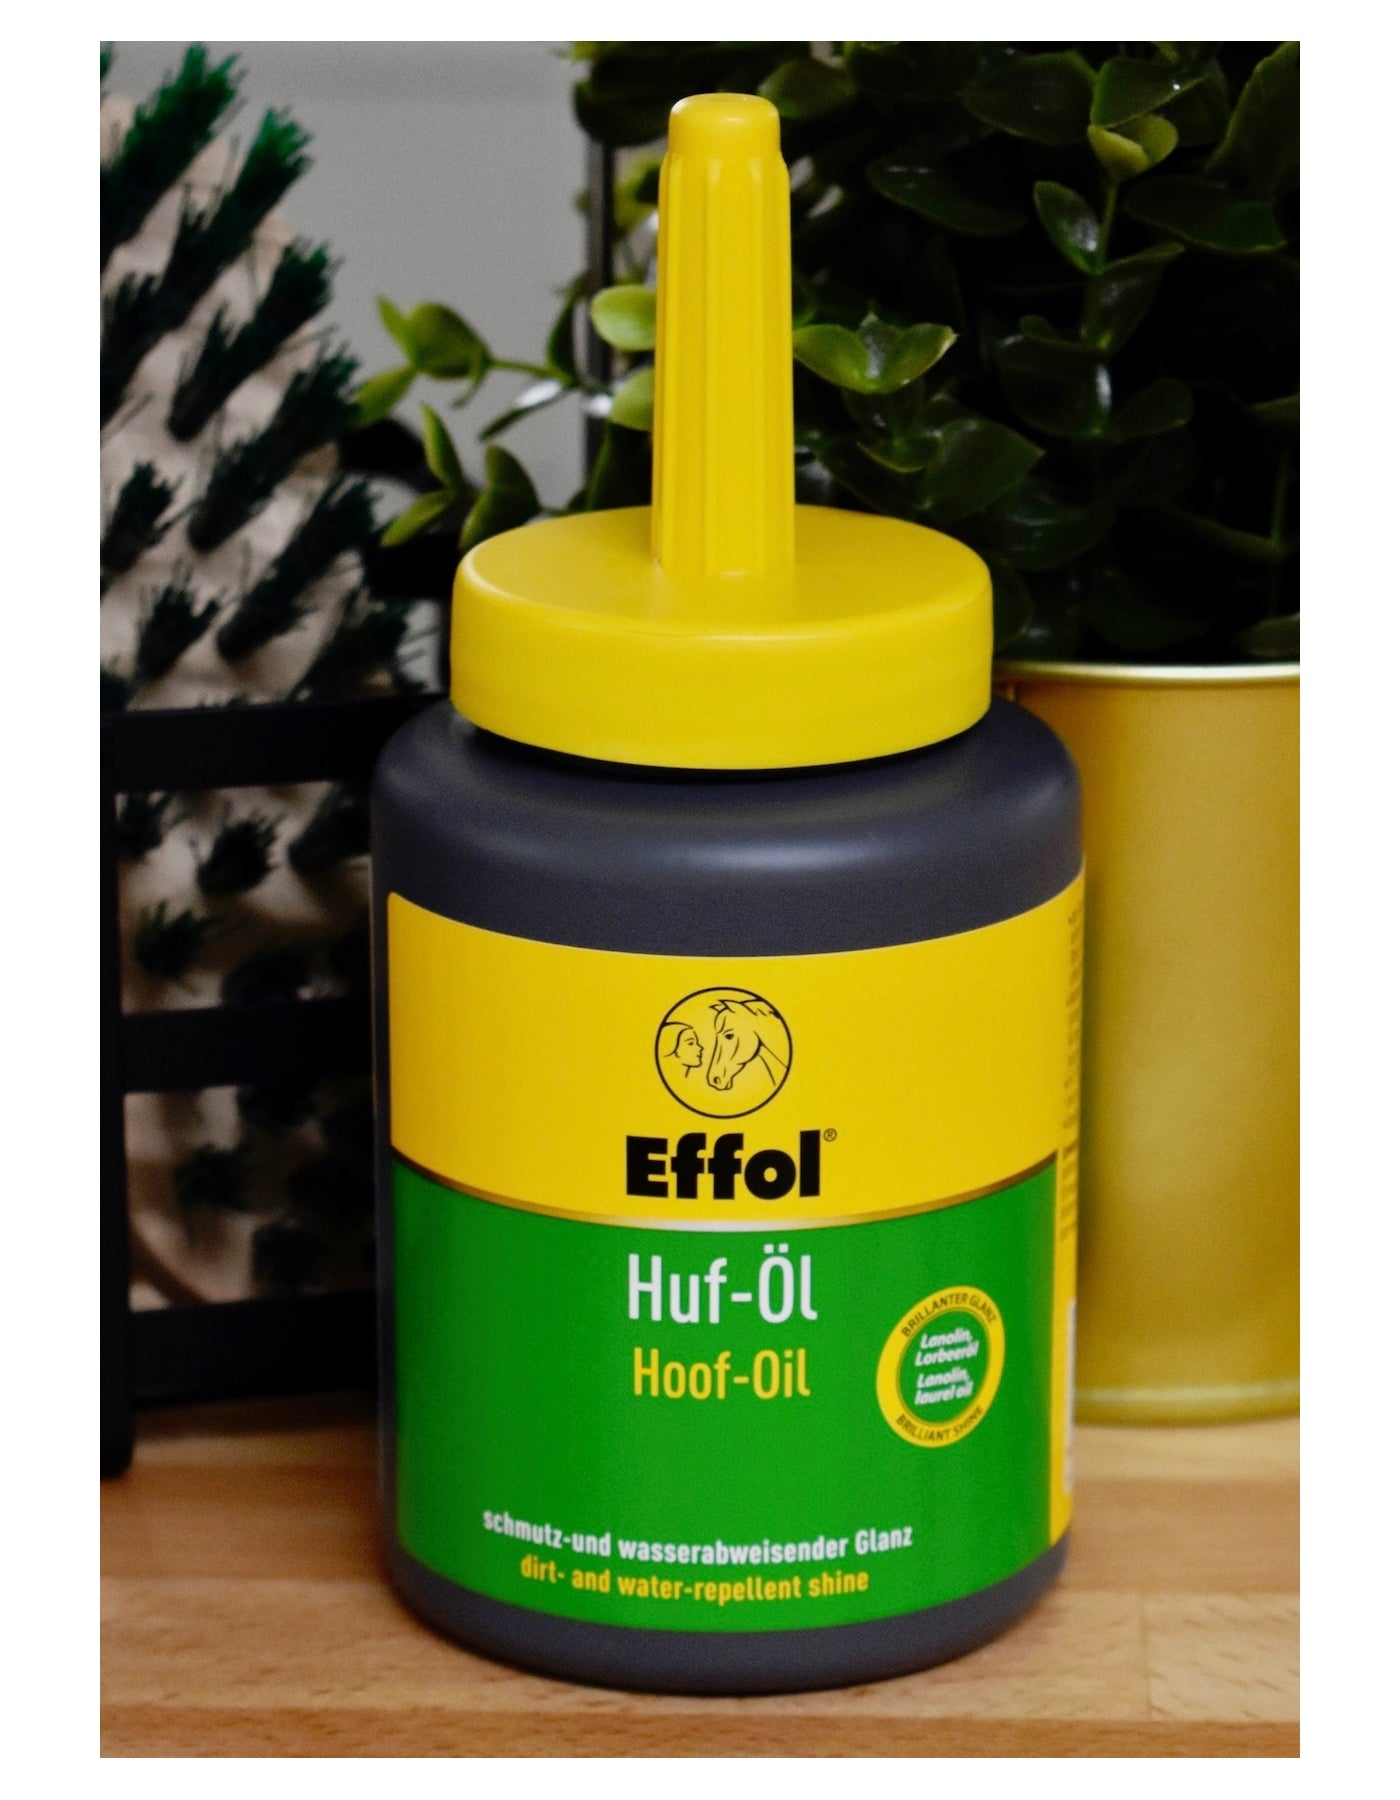 Effol Hoof Oil 475ml | Horse Care - Buy Online SPR Centre UK